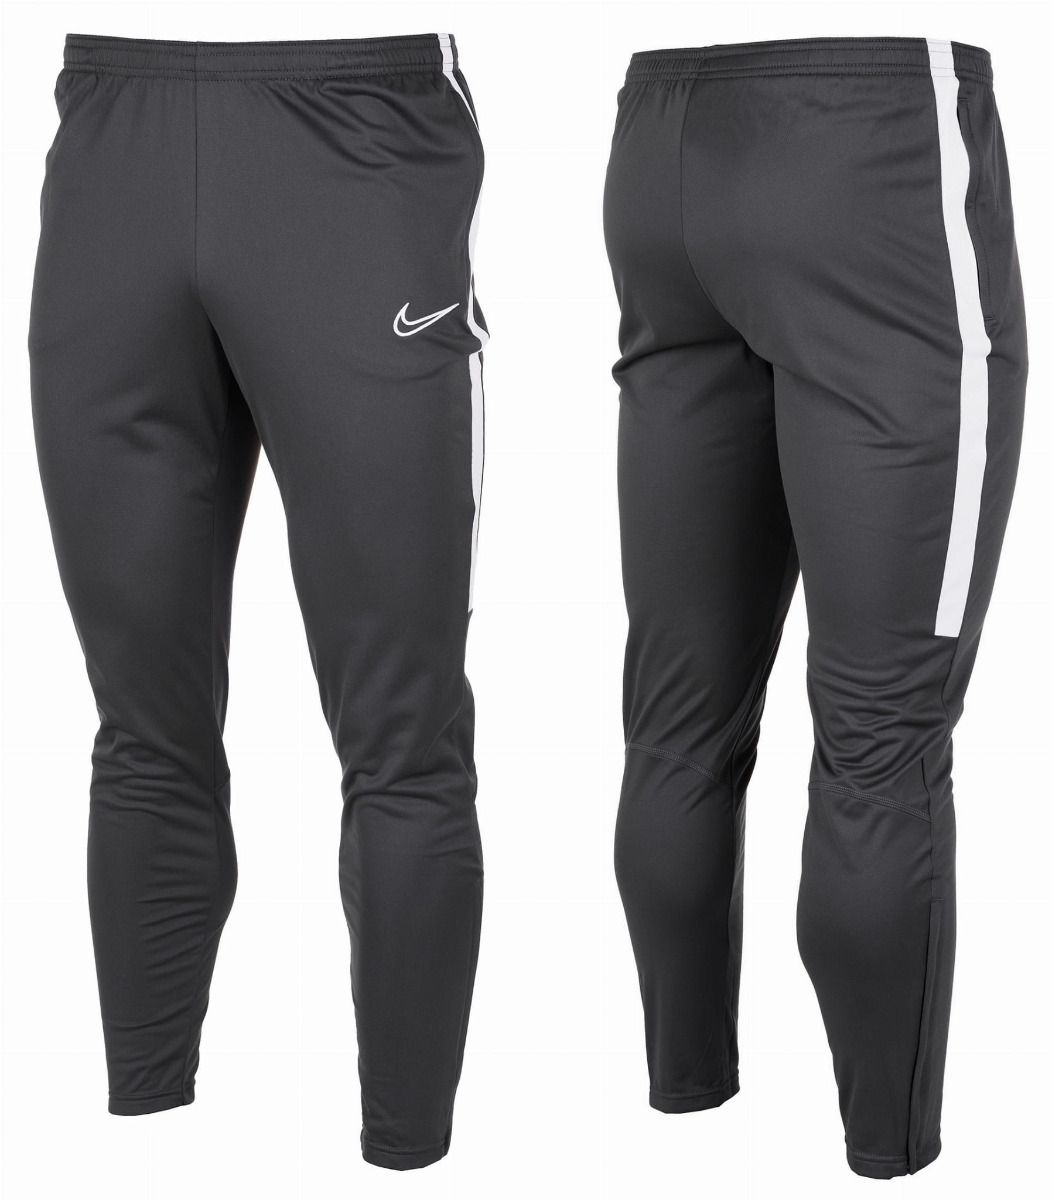 Nike Spodnie Męskie M Dry Academy AJ9181 060